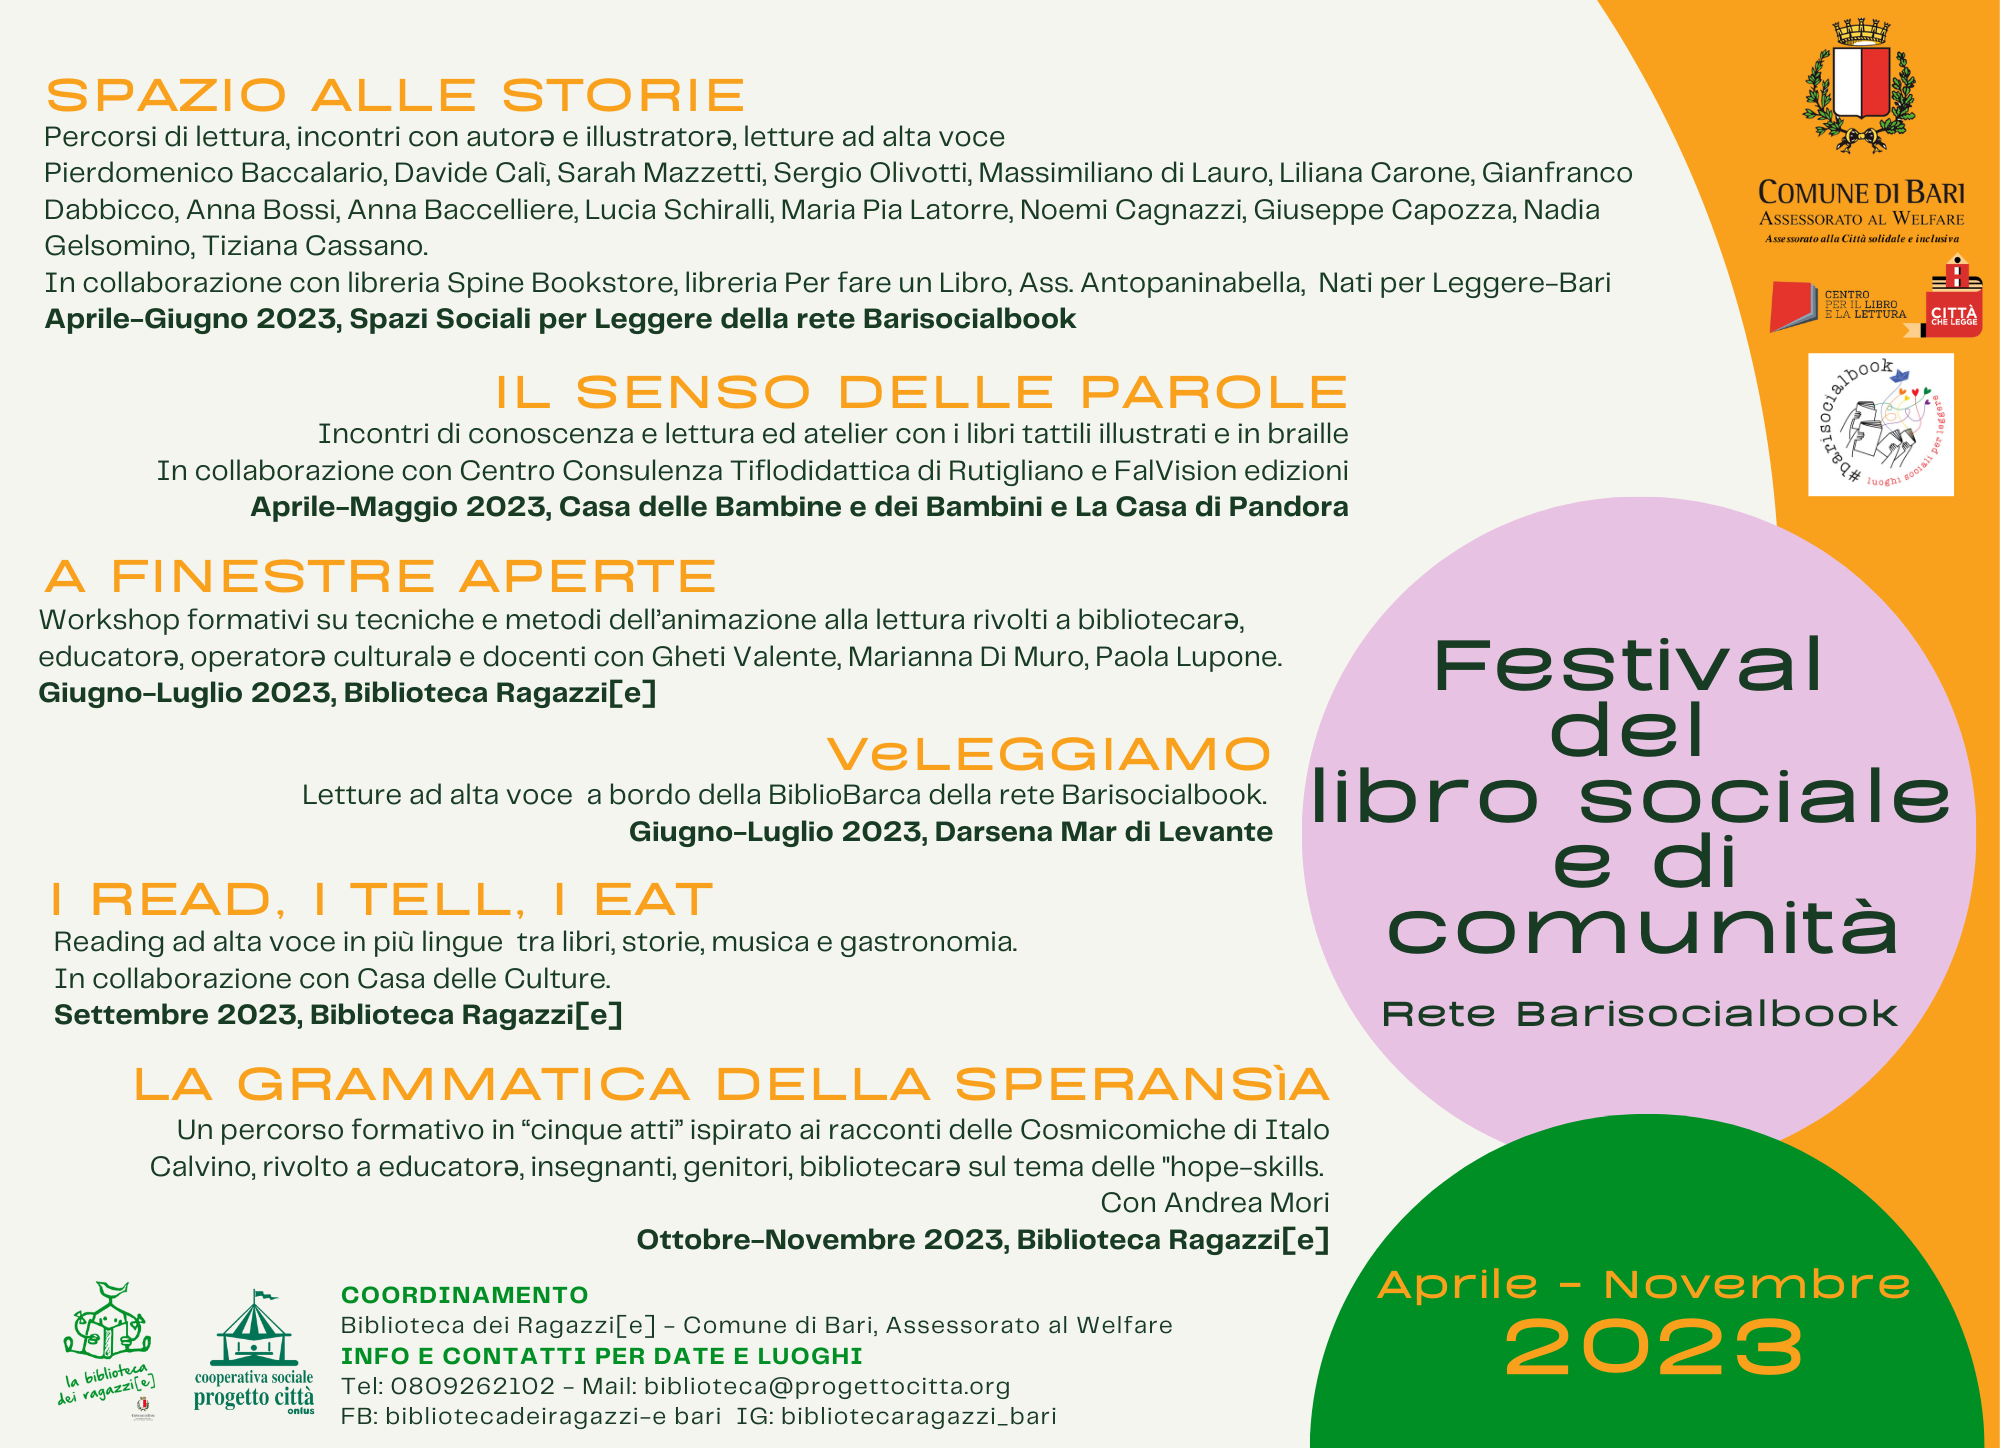 29-03-23 al via la quinta edizione del Festival del Libro sociale e di comunità locandina